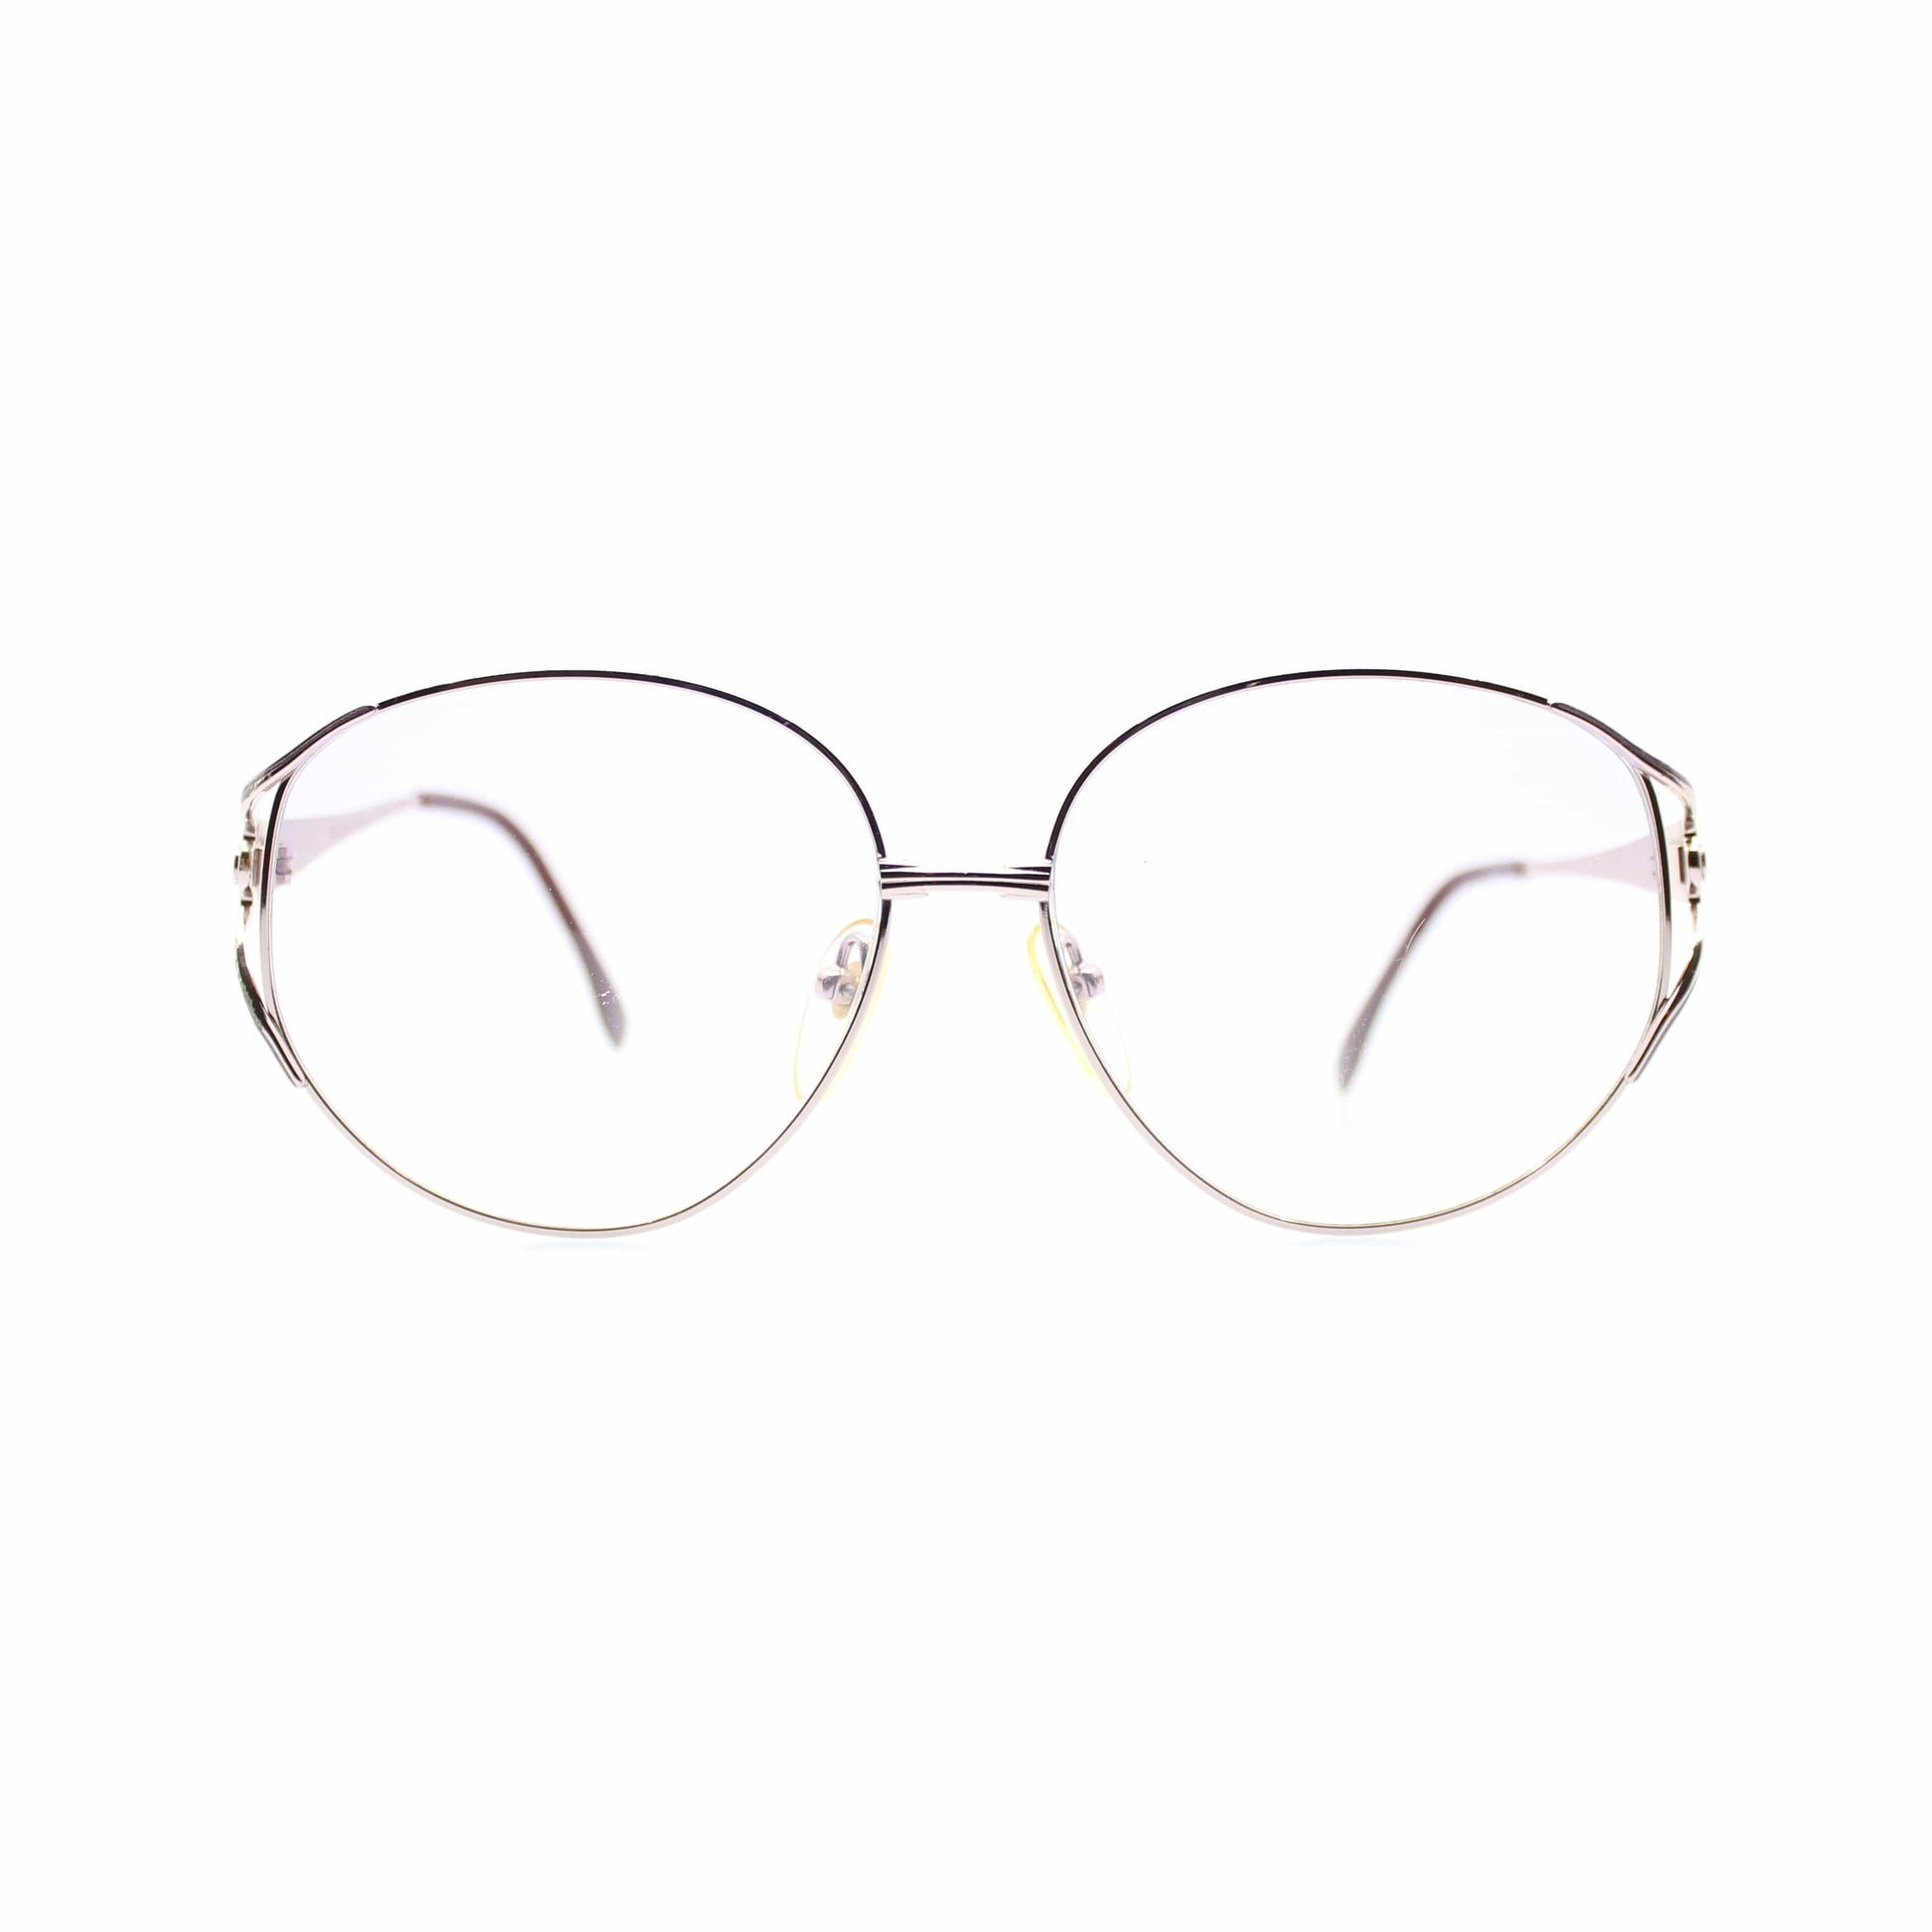 Yves Saint Laurent 31-1606 Sunglasses RSTKD Vintage